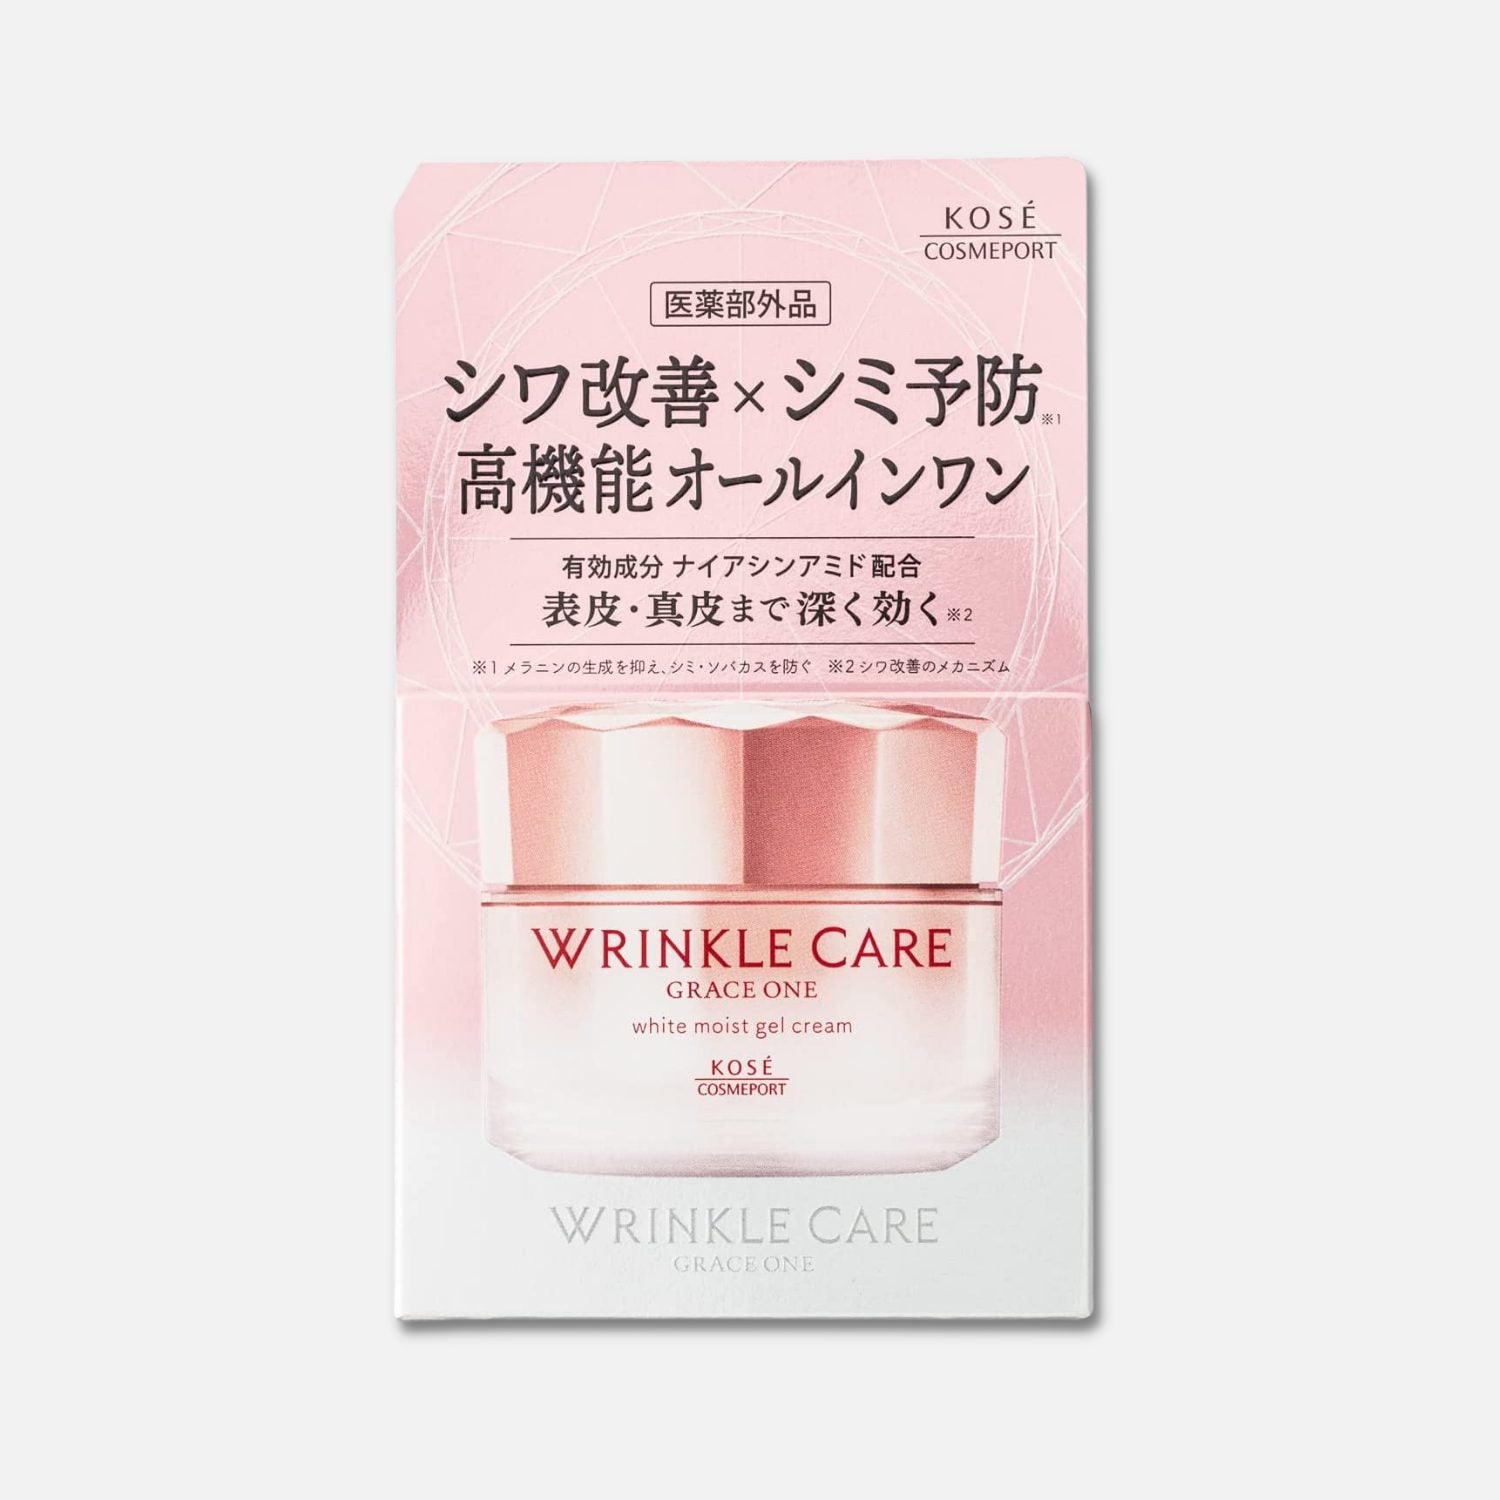 Kose Grace Wrinkle Care White Moist Gel Cream 100g - Buy Me Japan